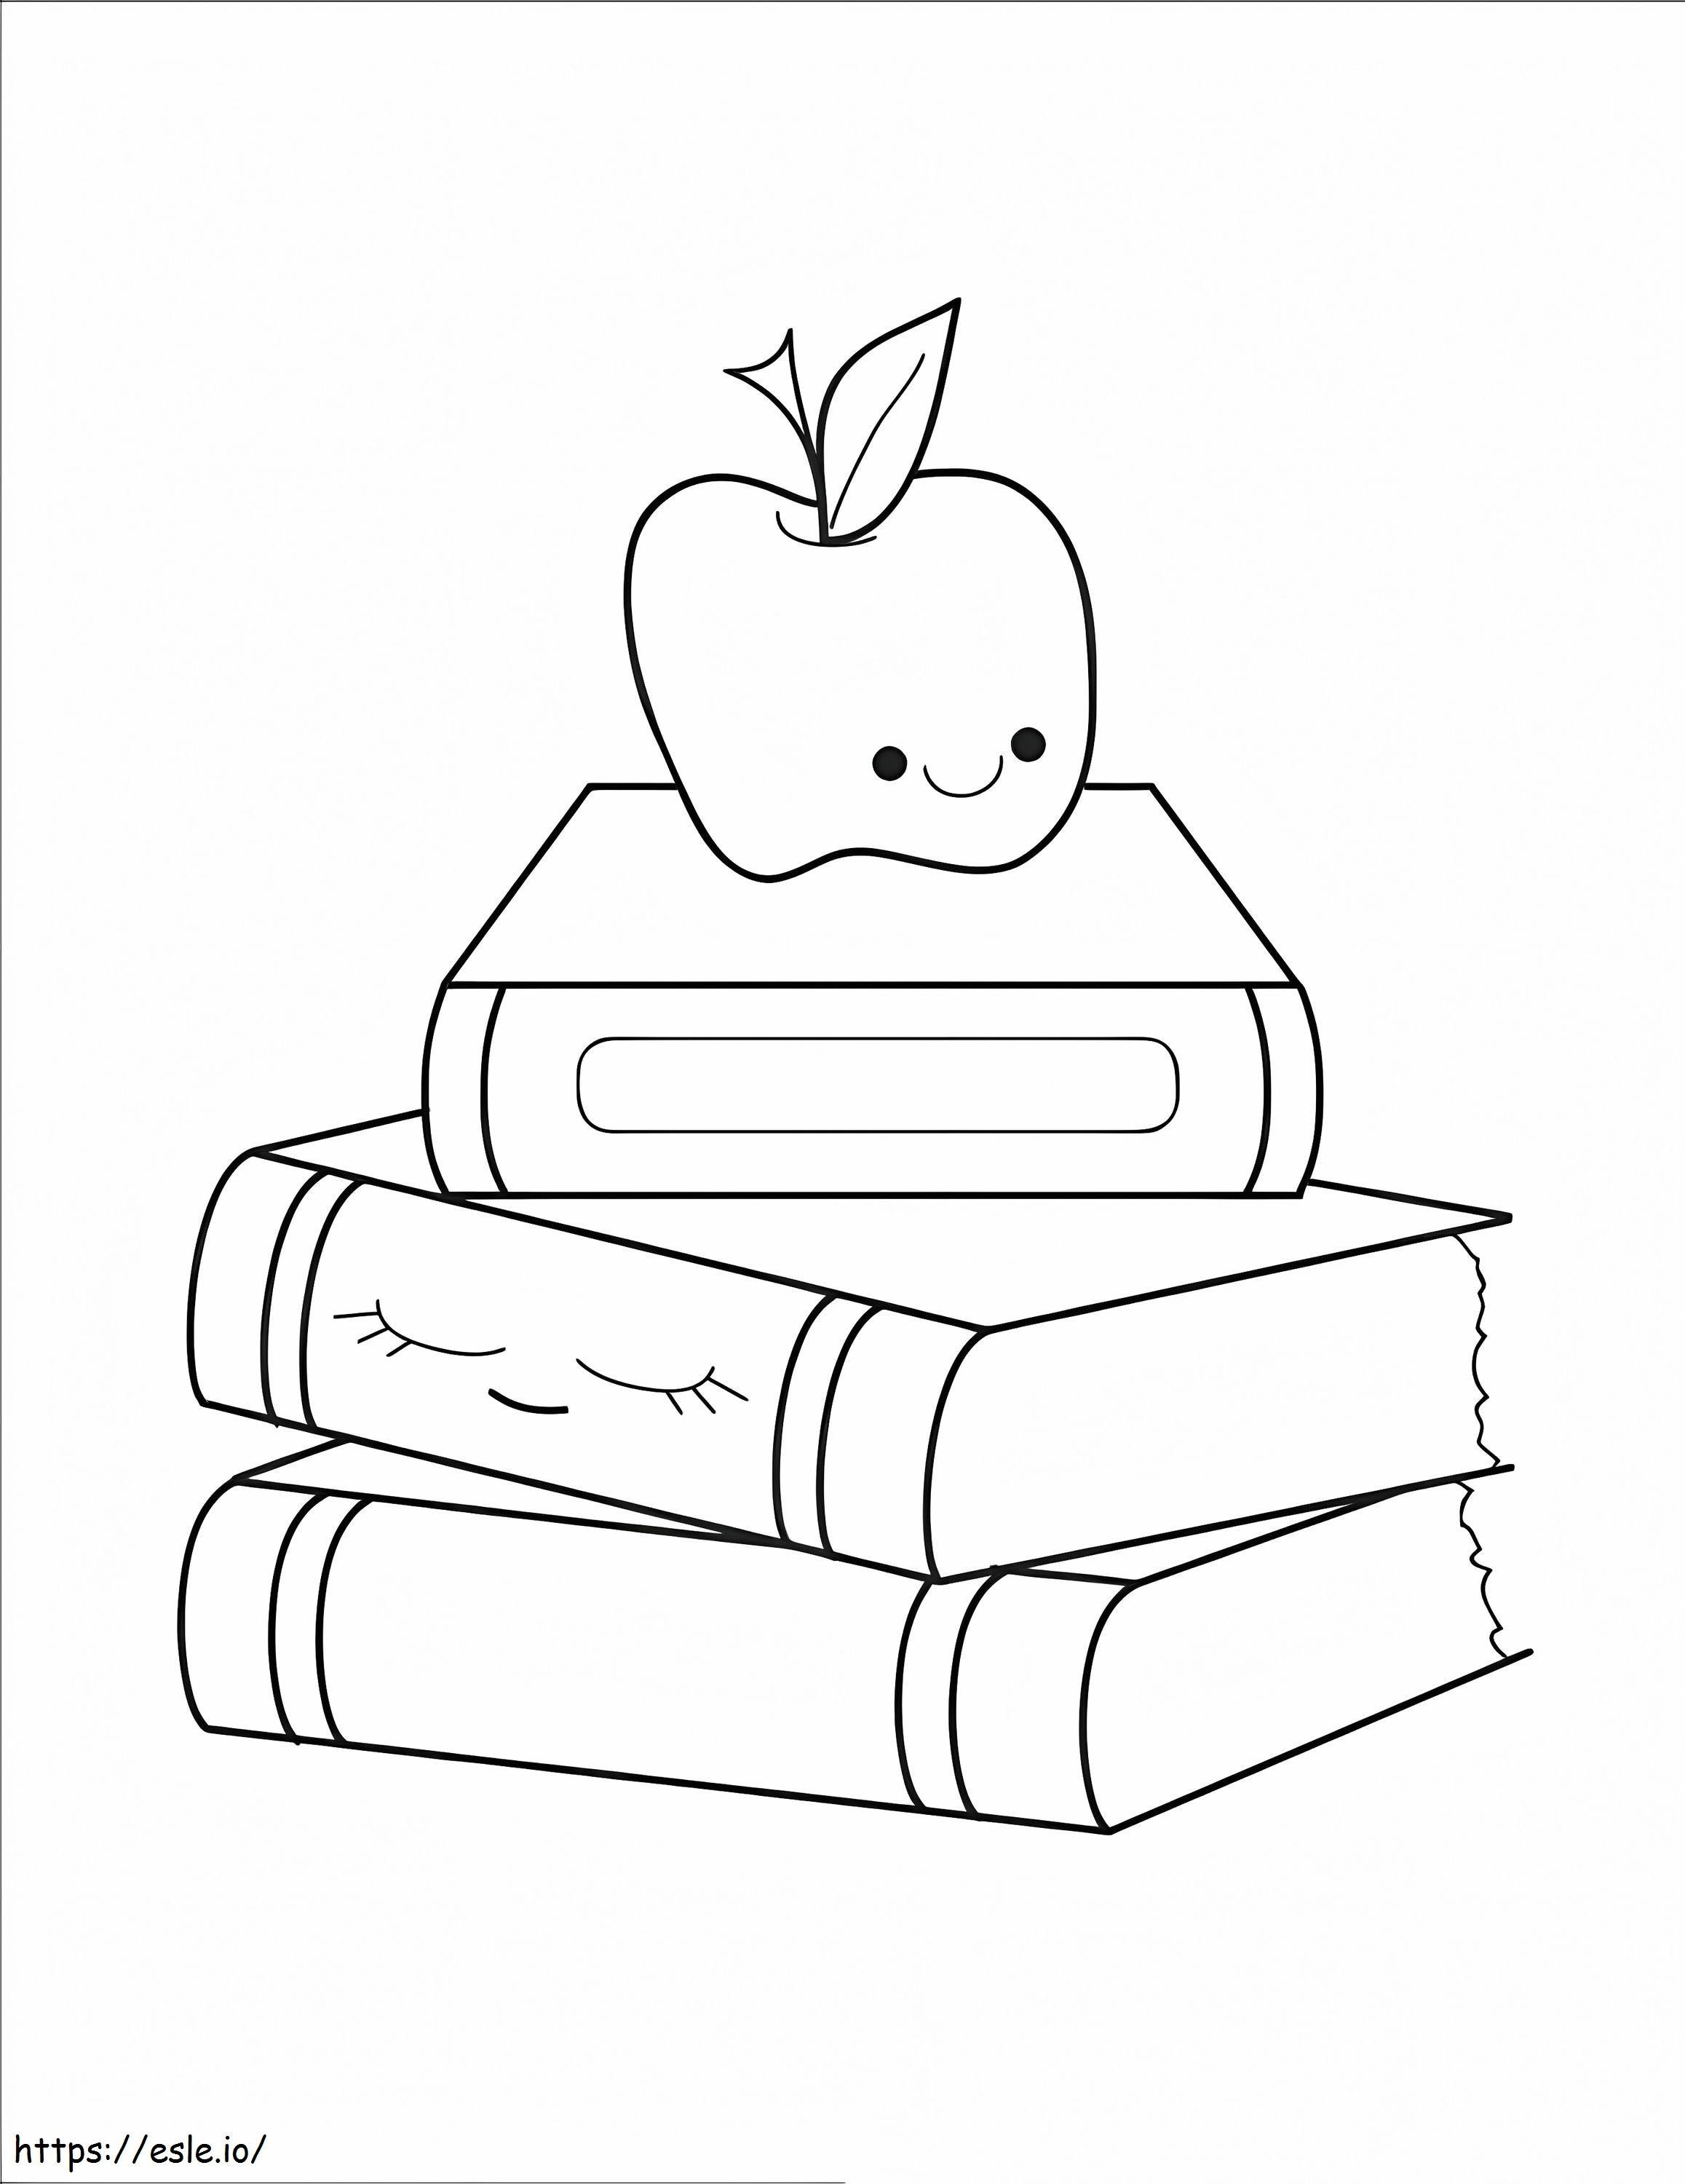 Apple in due libri di ritorno a scuola da colorare